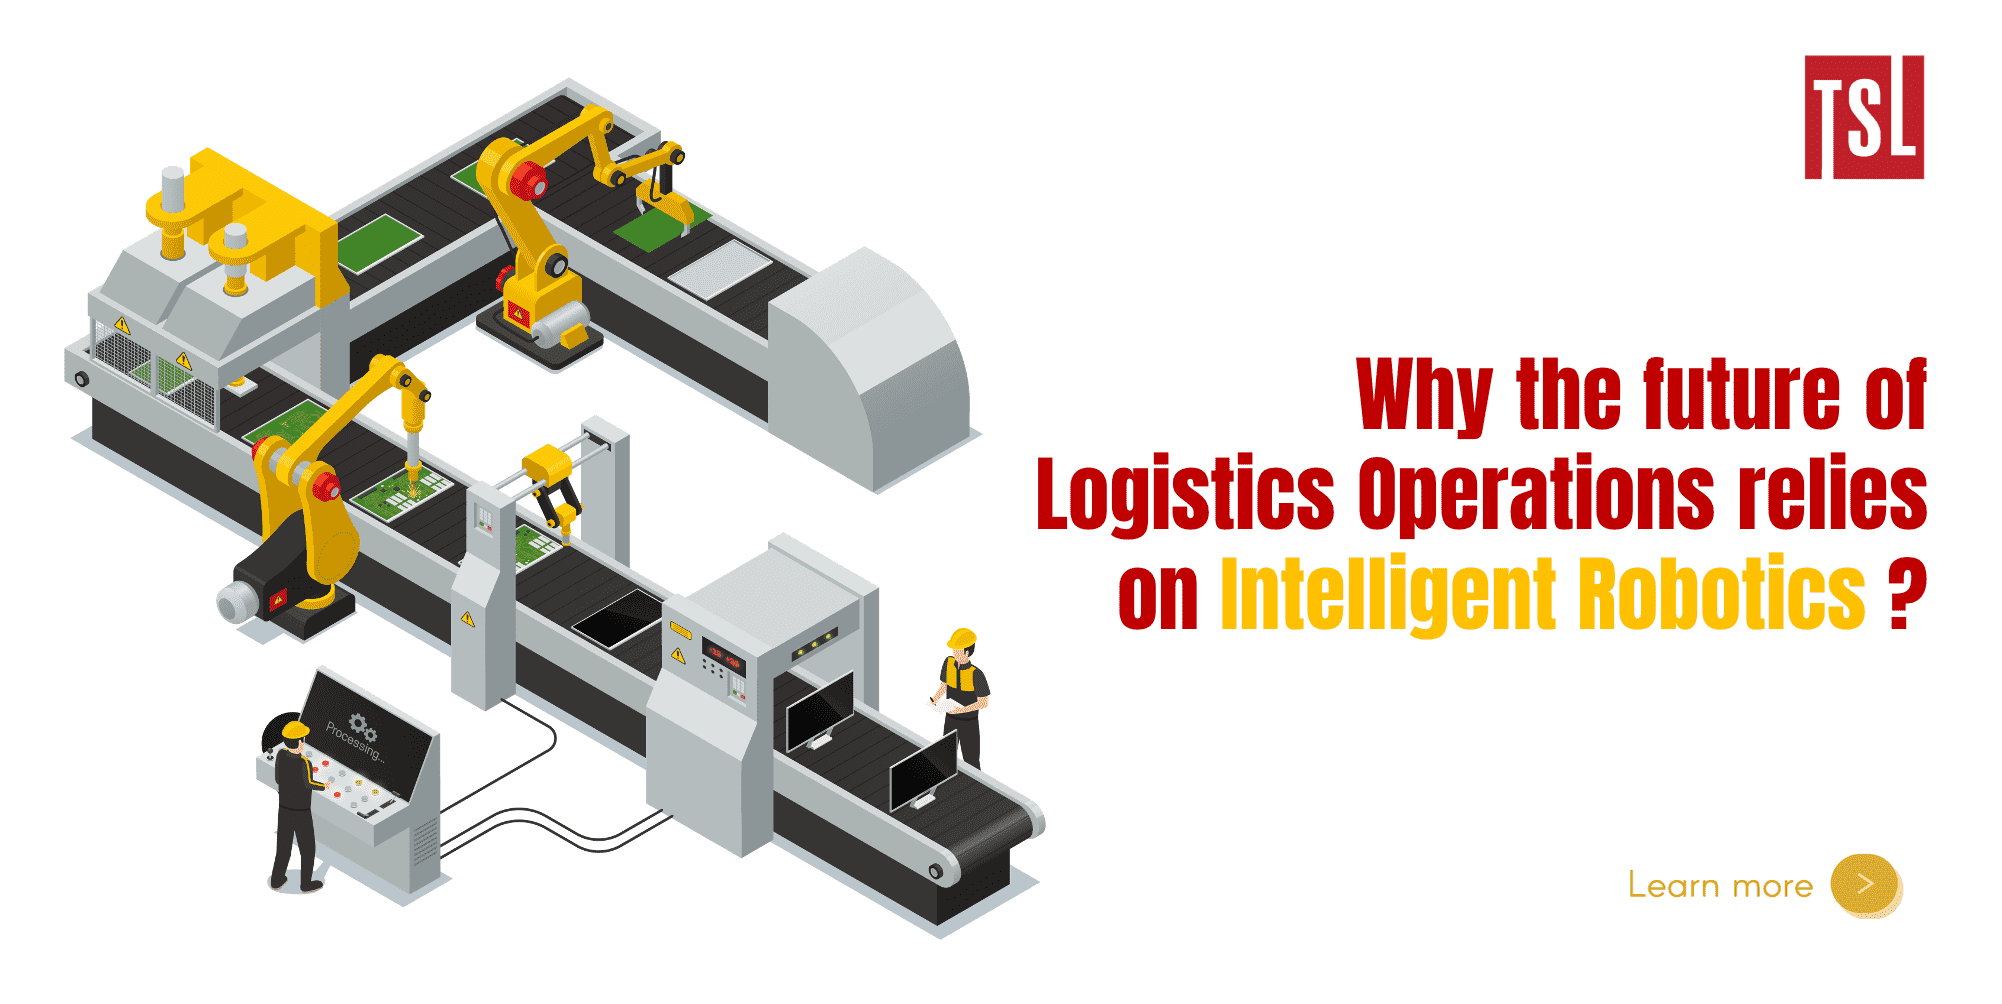 Tại sao tương lai của hoạt động logistics sẽ phụ thuộc vào robot thông minh?